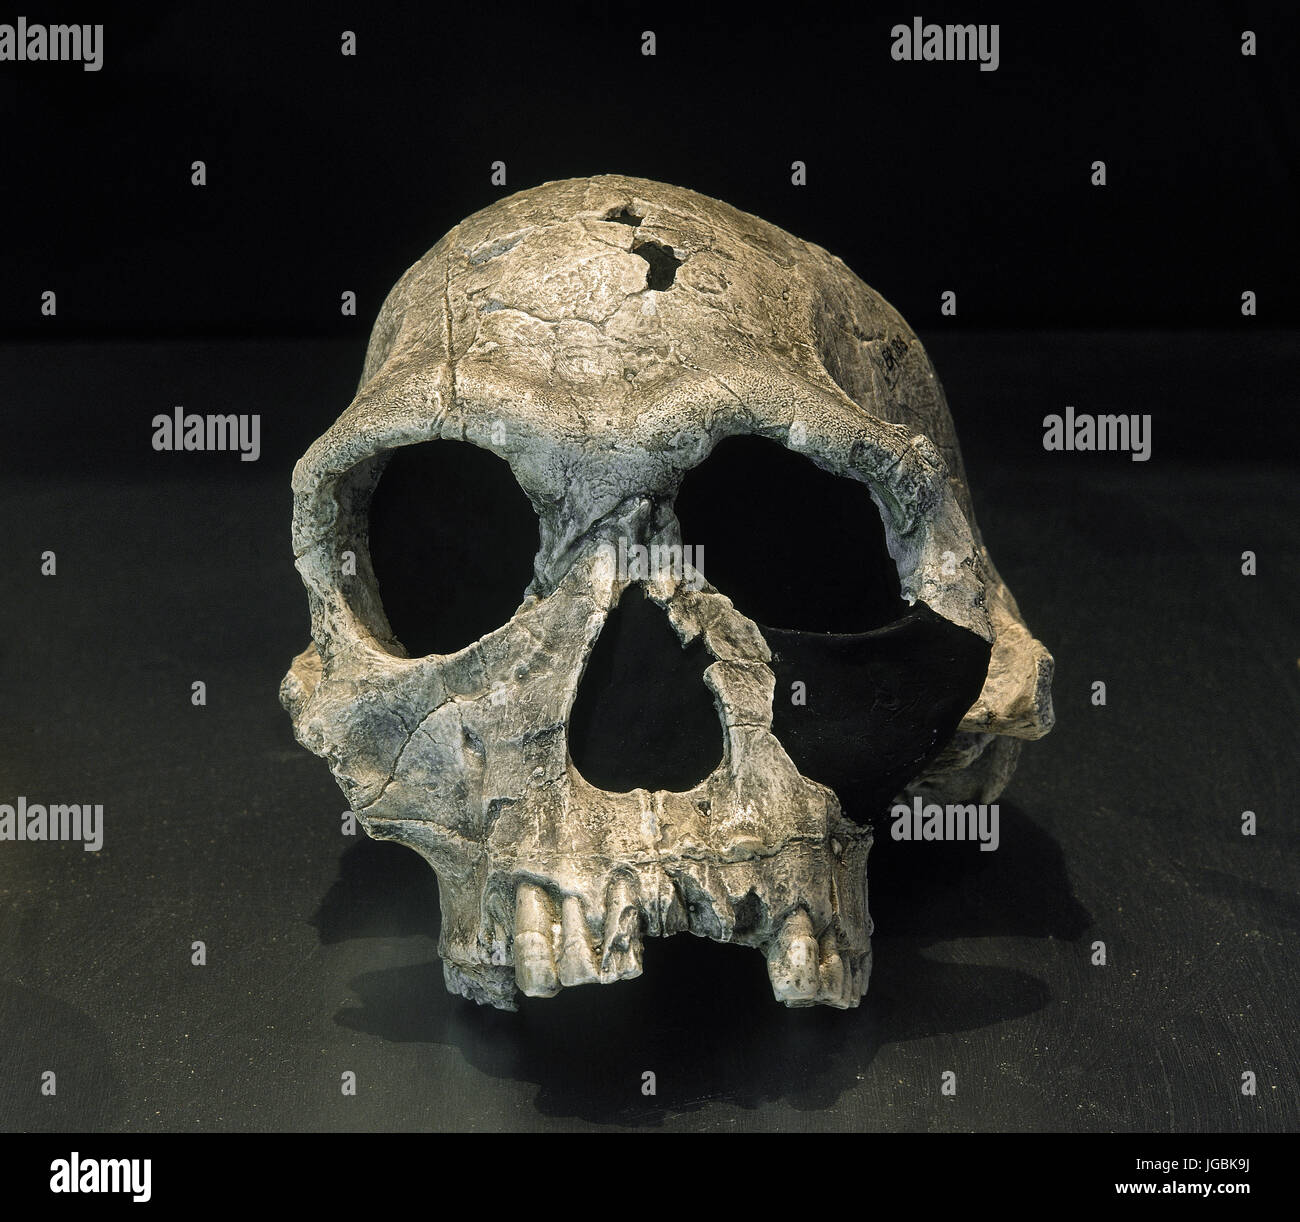 Homo Habilis. Fossil KNM-ER 1813. Vollständige Schädel. 1,9 Milliions Jahre alt. Descovered in Koobi Fora, Kenia. Afrika. Stockfoto